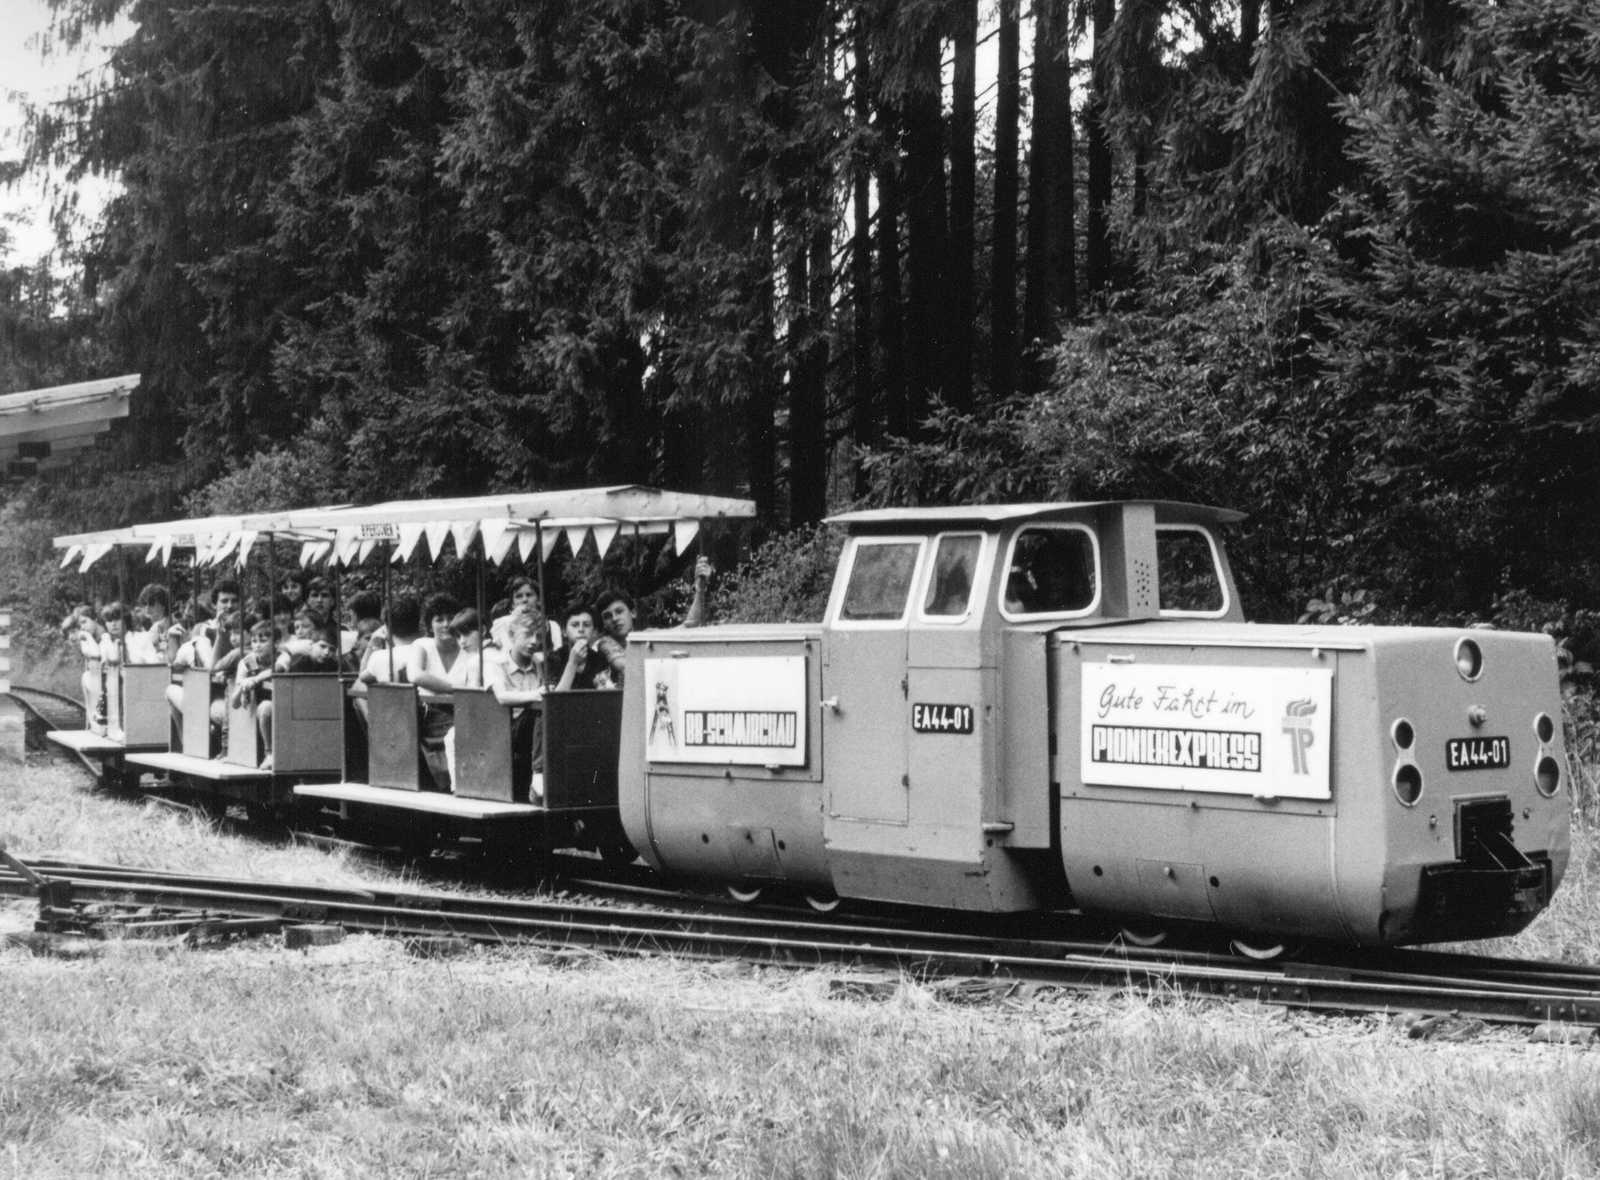 EA 44-01 fährt mit einem vollbesetzten Zug am Lokschuppen der Eisenbahn vorbei